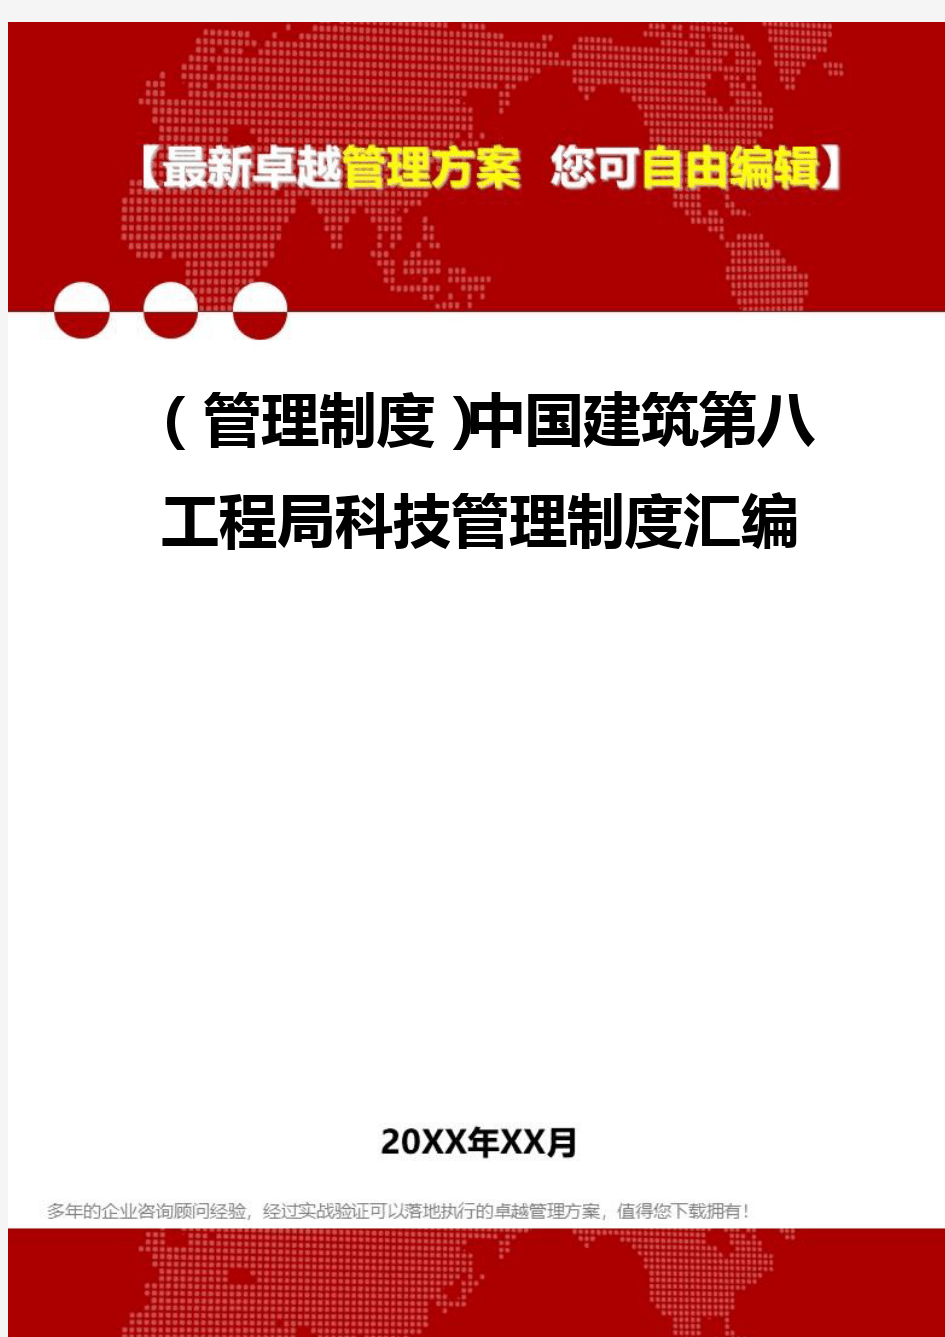 2020年(管理制度)中国建筑第八工程局科技管理制度汇编